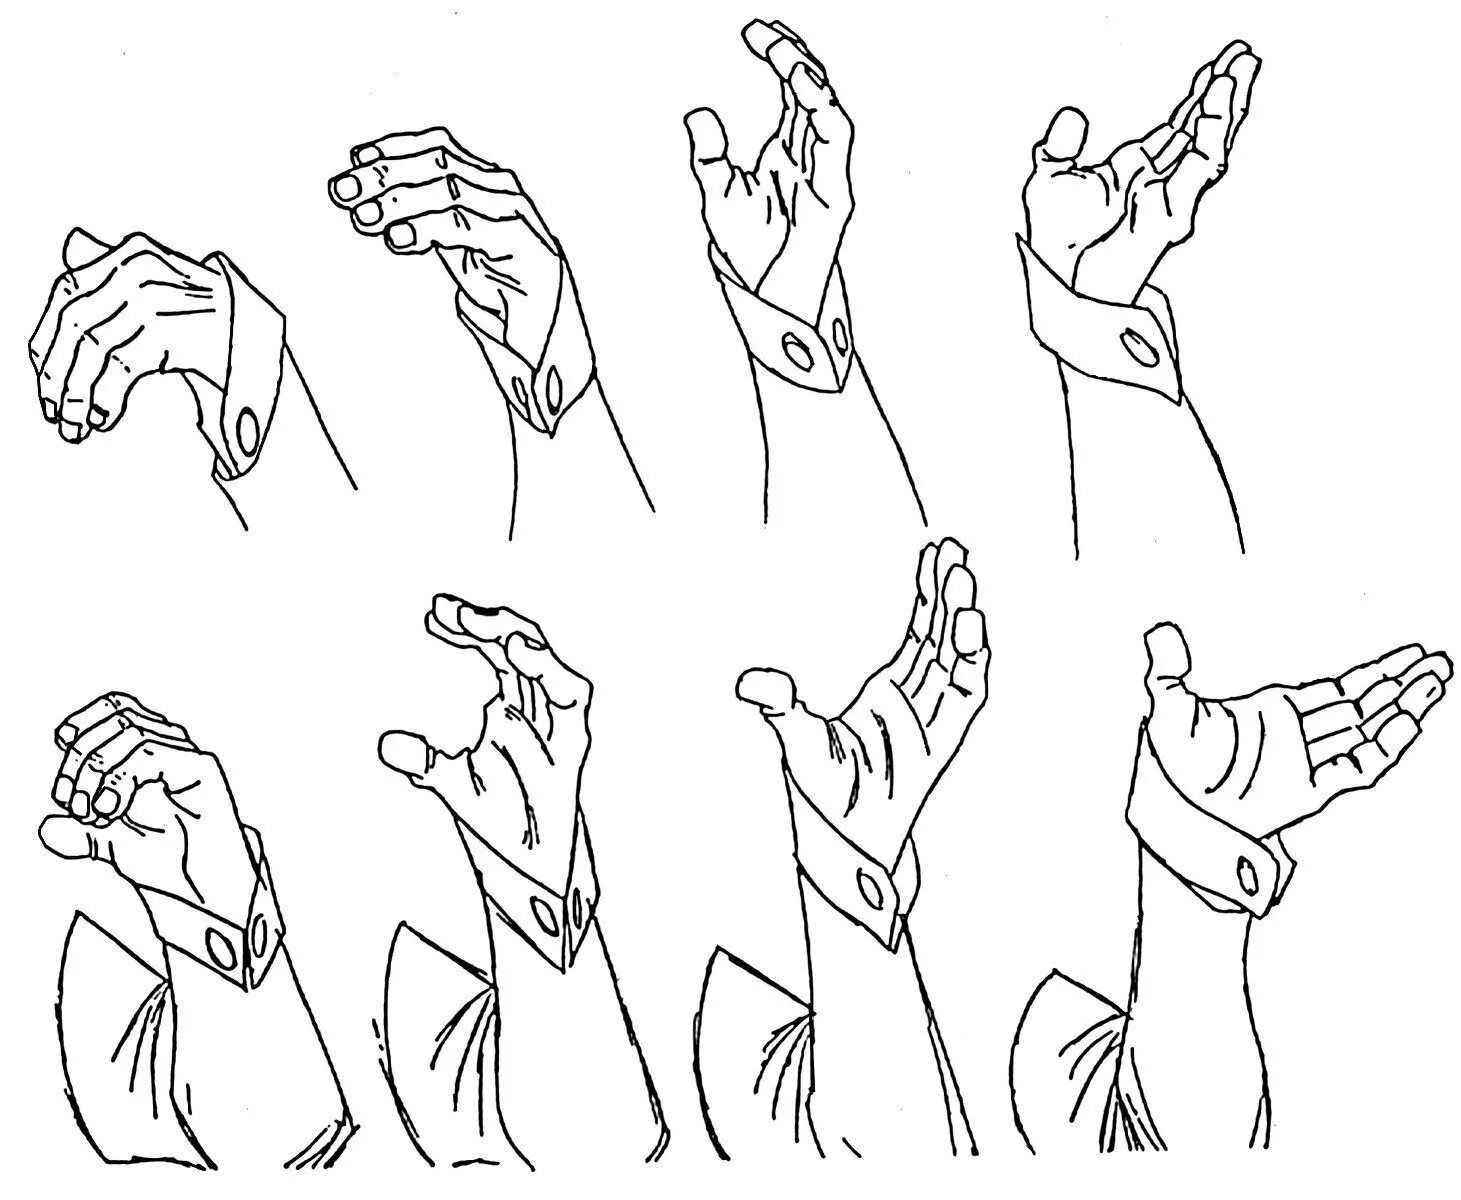 Активно жестикулирующий. Кисть руки вверх референс. Позы рук для рисования. Положение рук для рисования. Жесты для рисования.